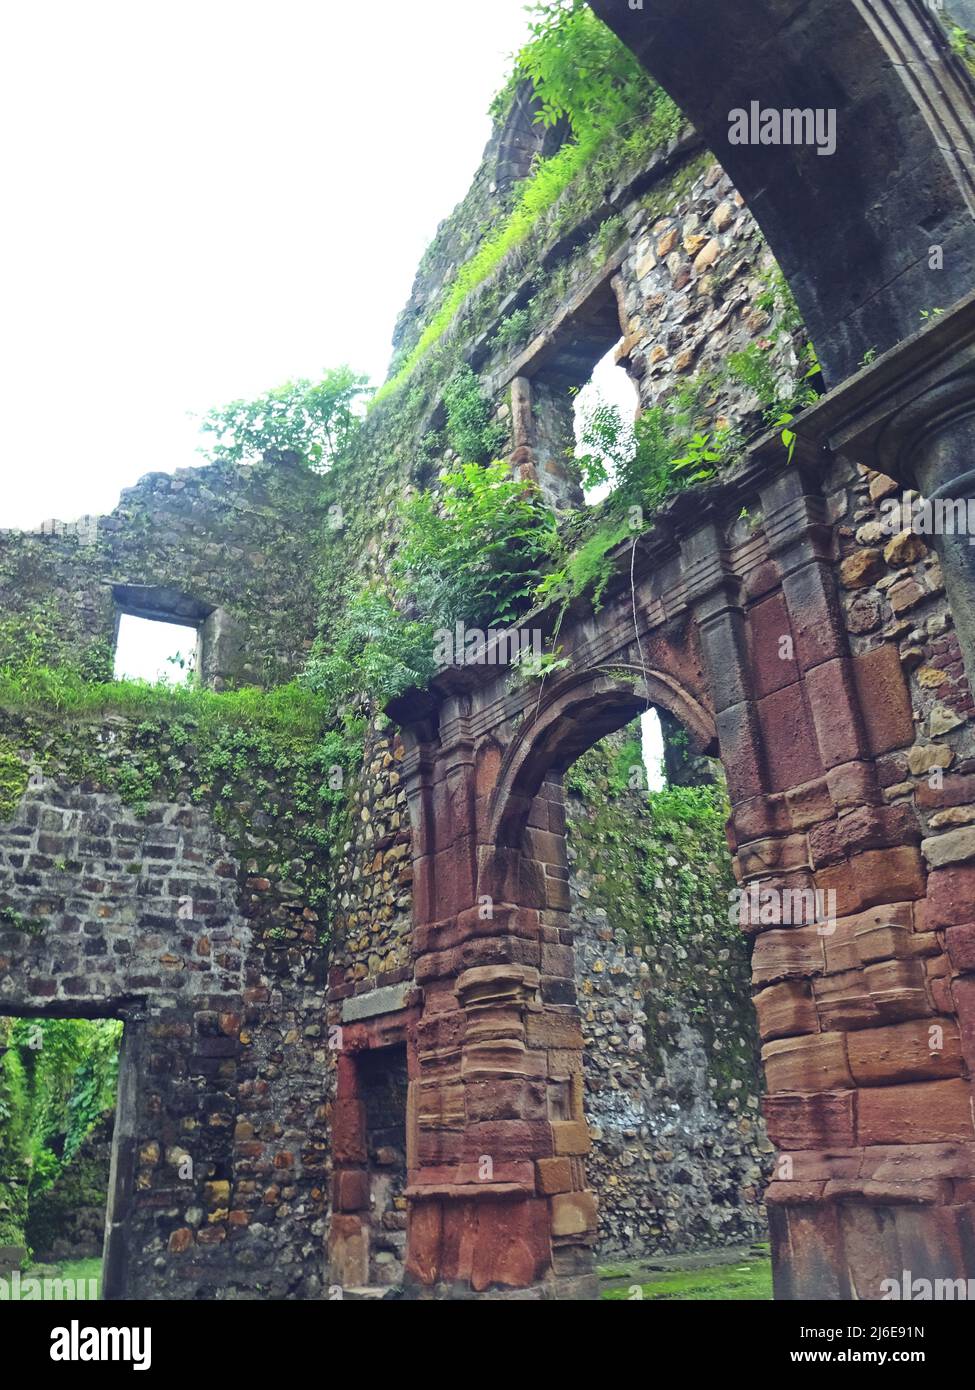 ruin of vasai fort, maharashtra, india Stock Photo